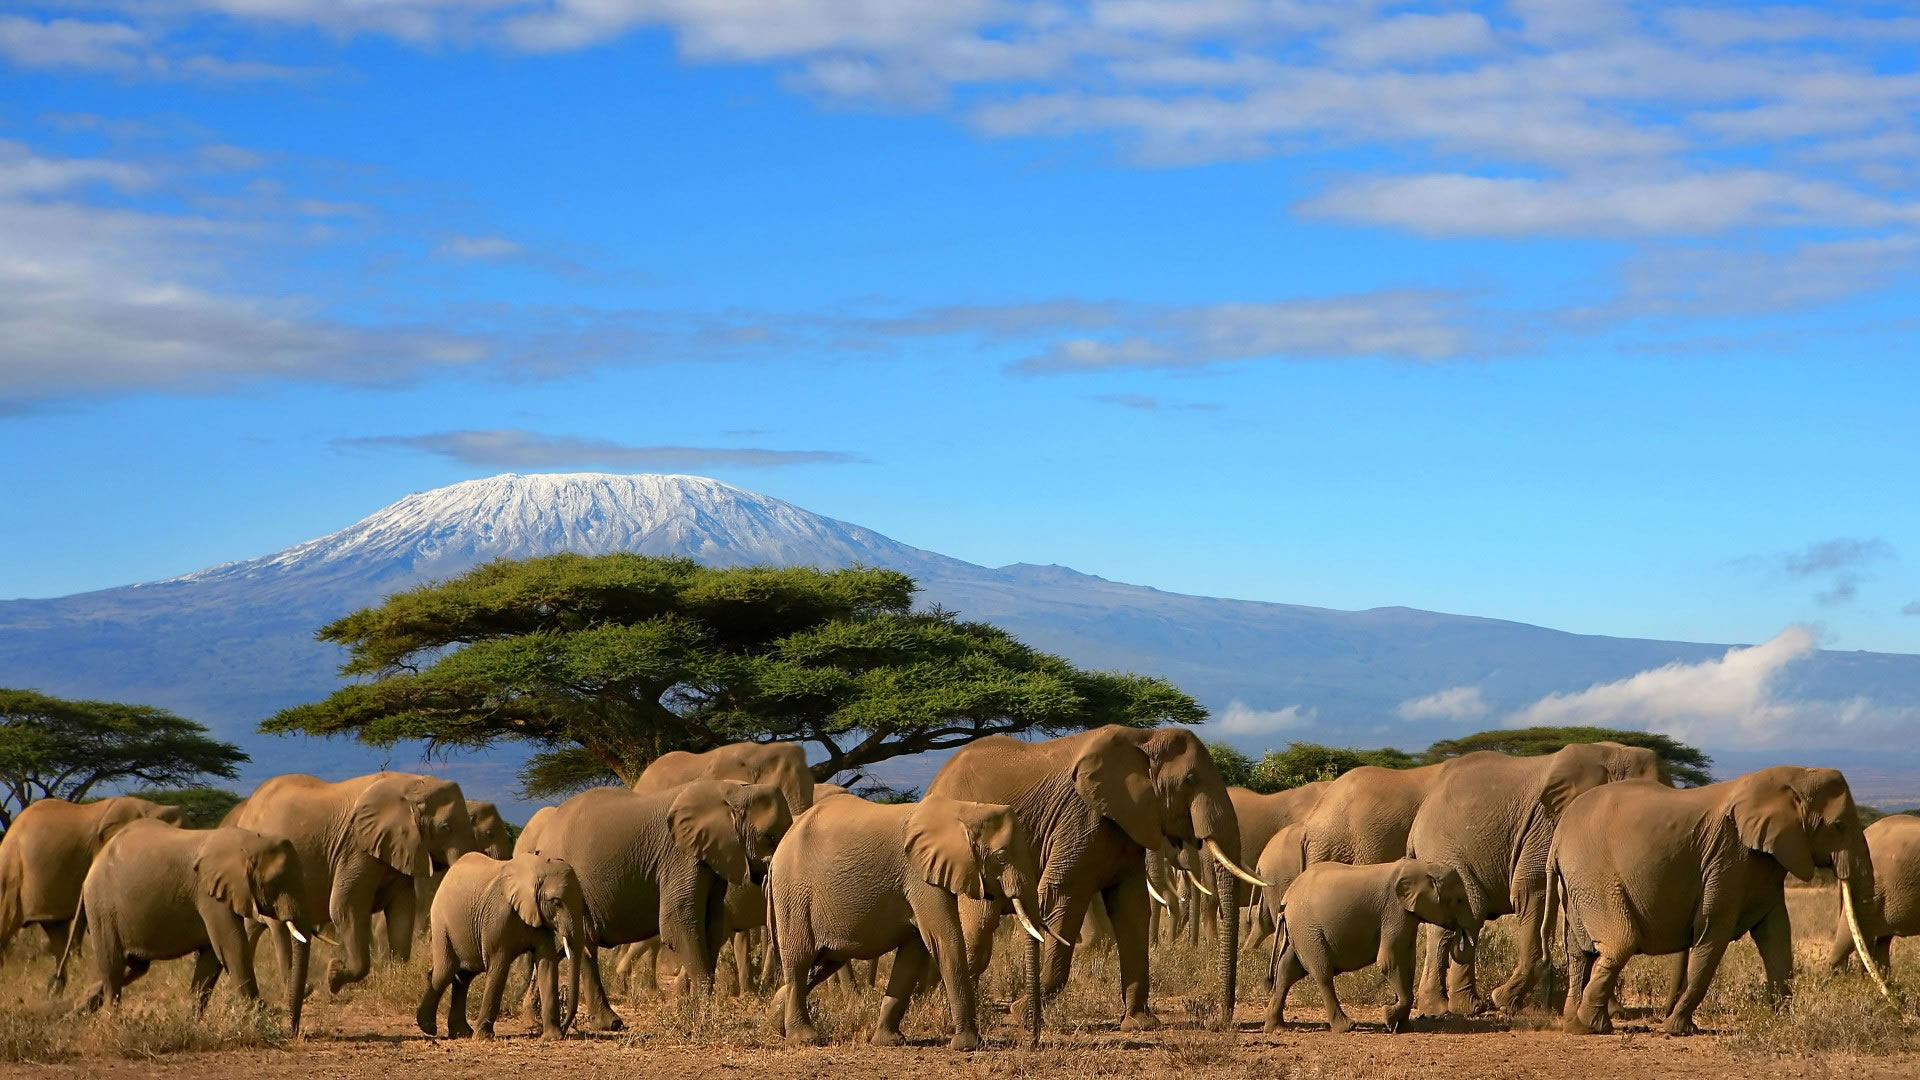 Elephants and Kilimanjaro background in Amboseli